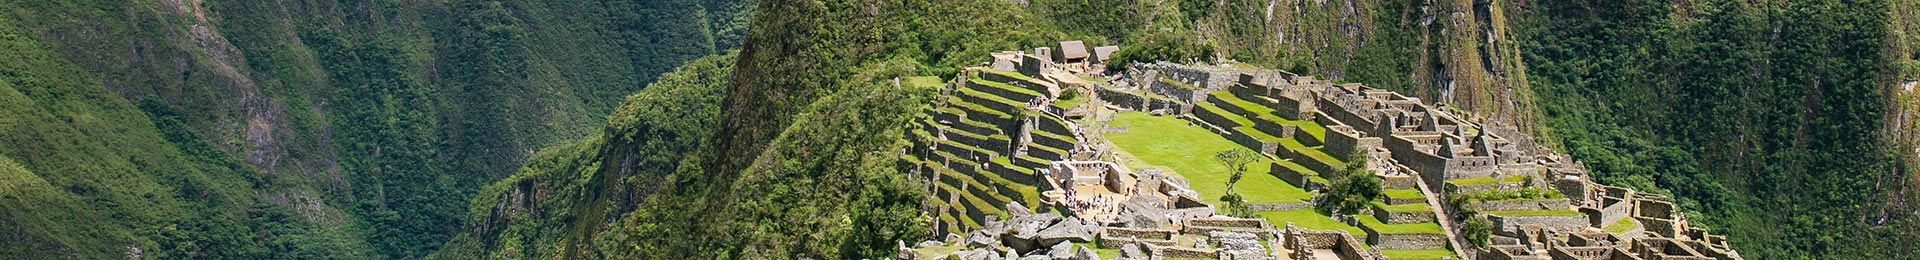 Мачу-Пікчу: мрія на іншому кінці світу